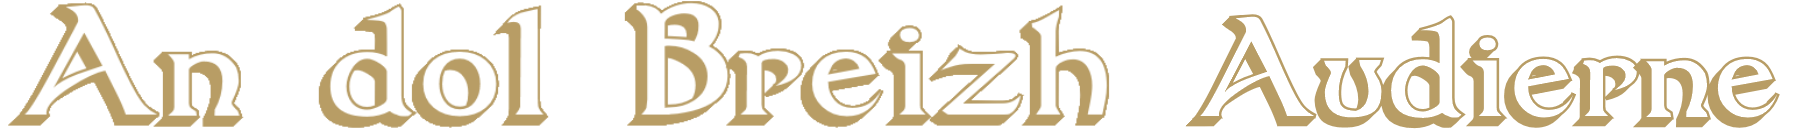 Logo Crêperie An Dol Breizh Audierne